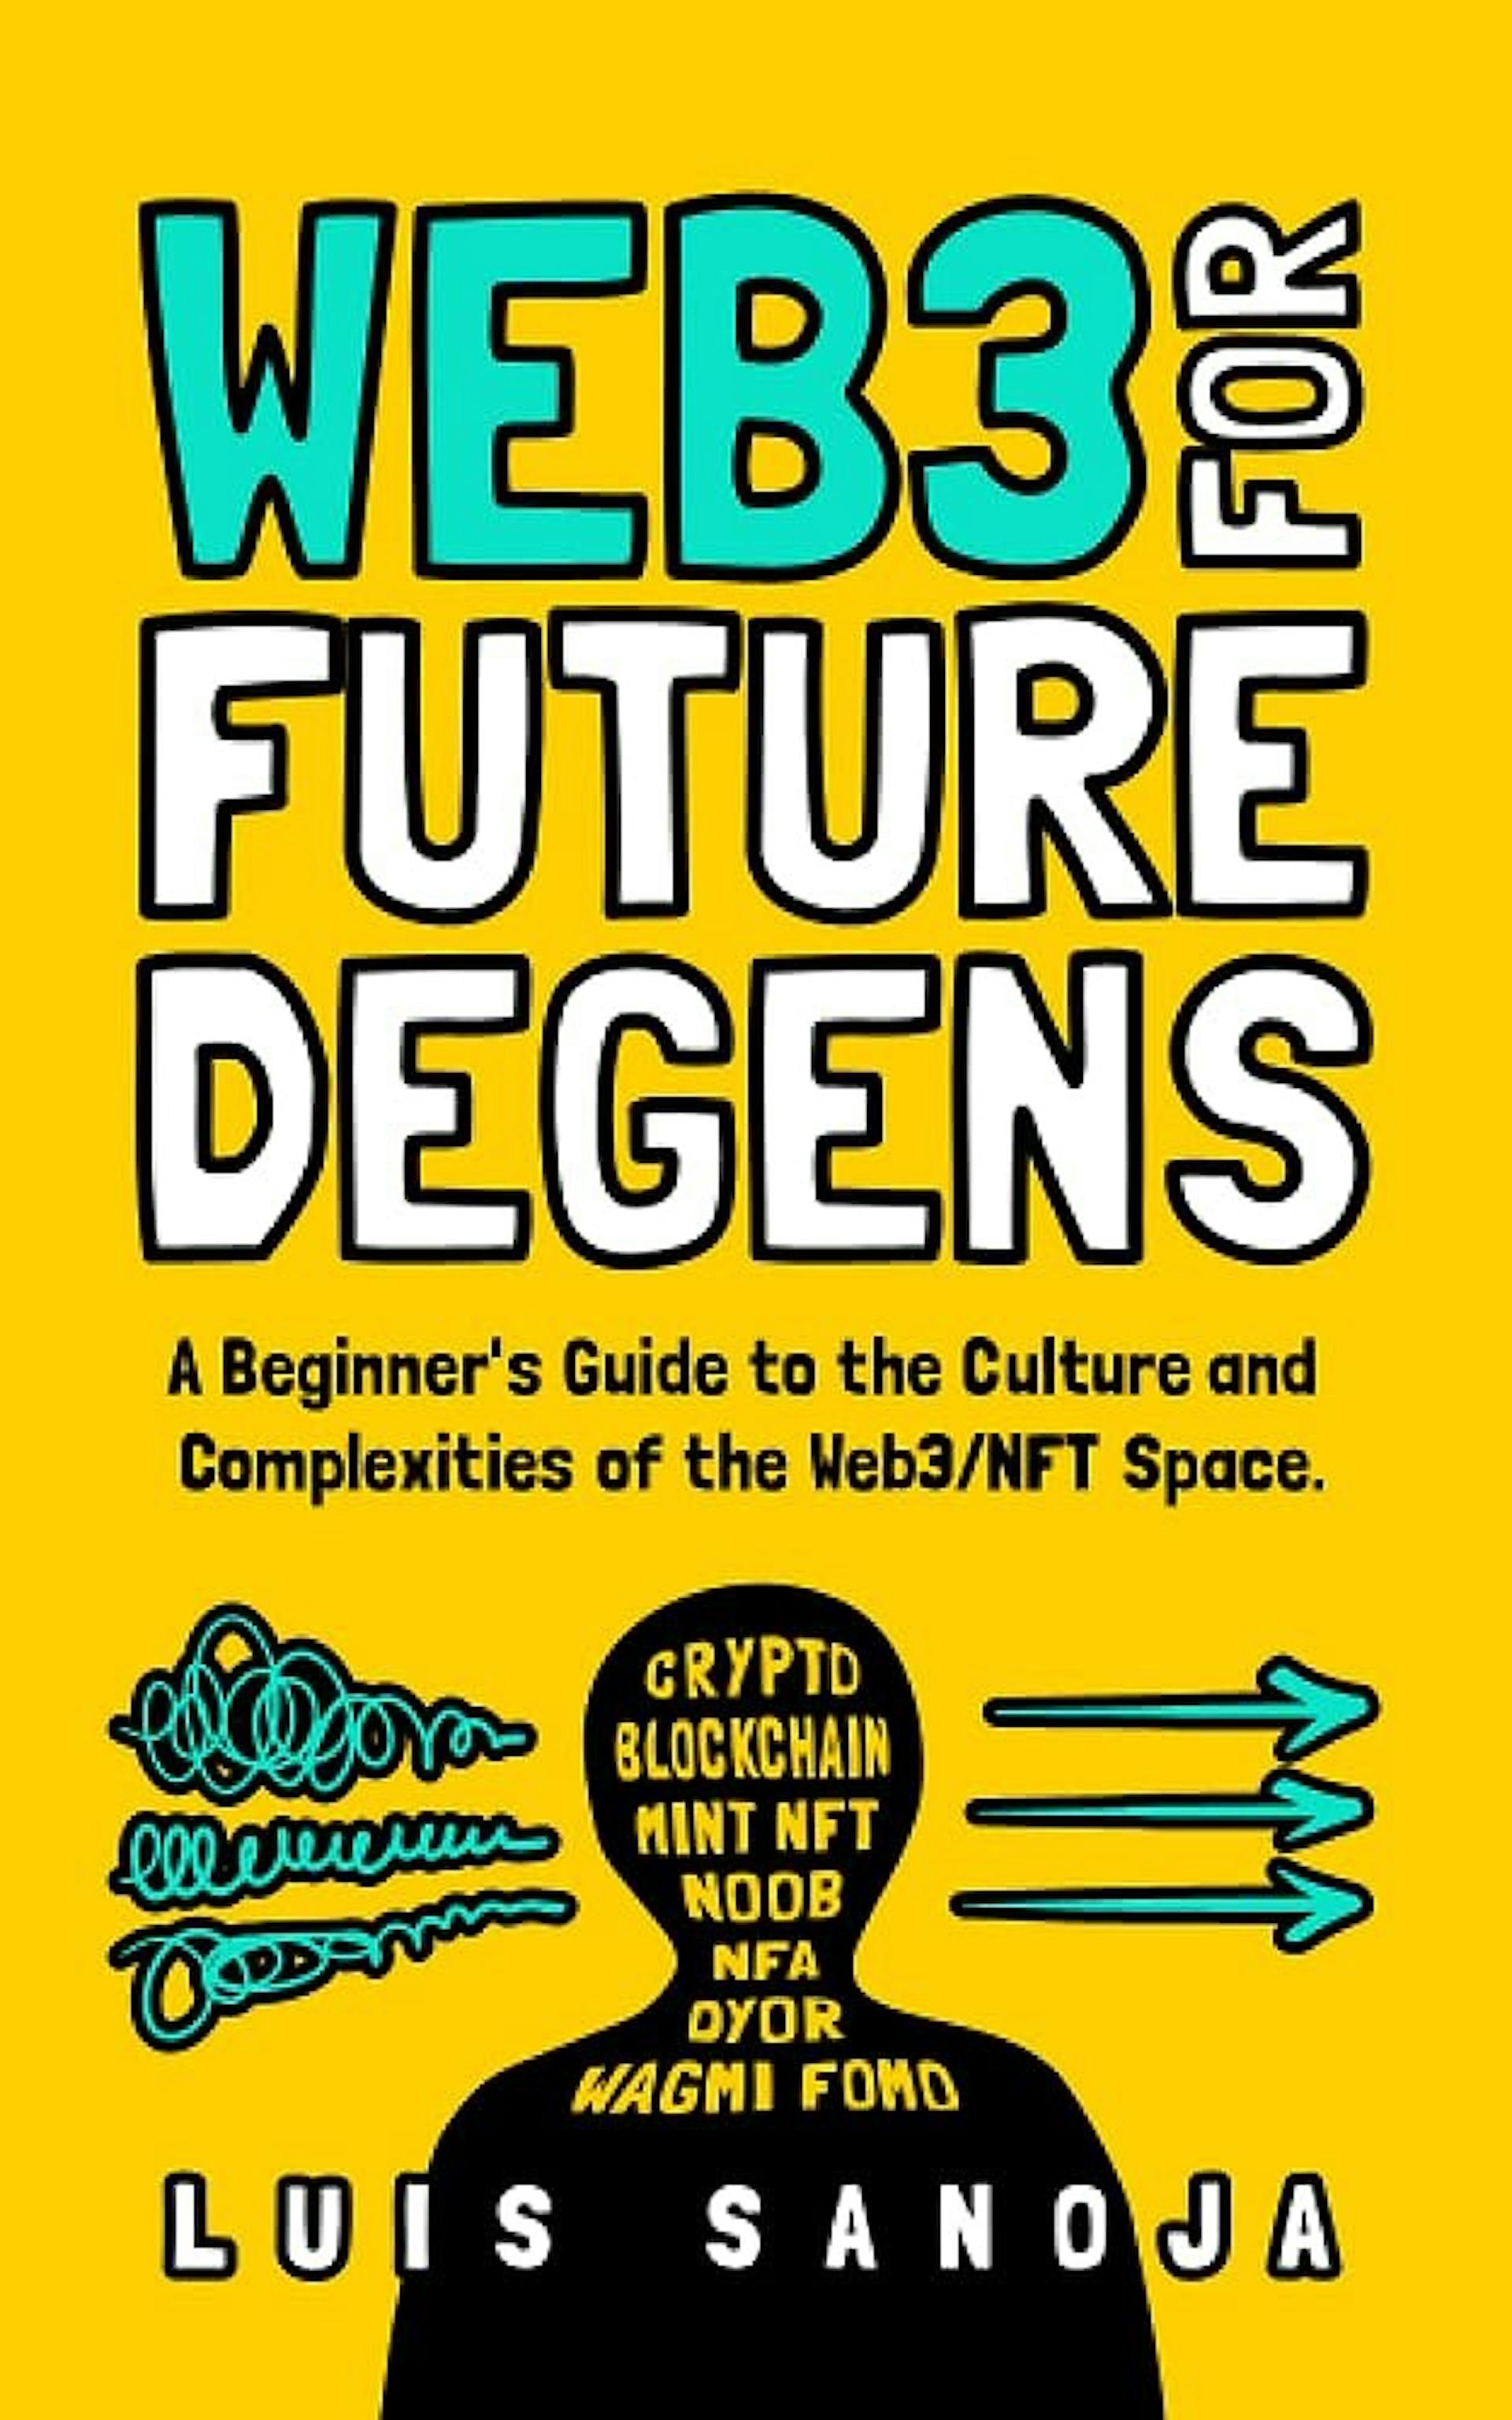 WEB3 POUR LES FUTURS DEGENS : Un guide du débutant sur la culture et les complexités de l'espace Web3/NFT. Livre broché – 22 février 2023